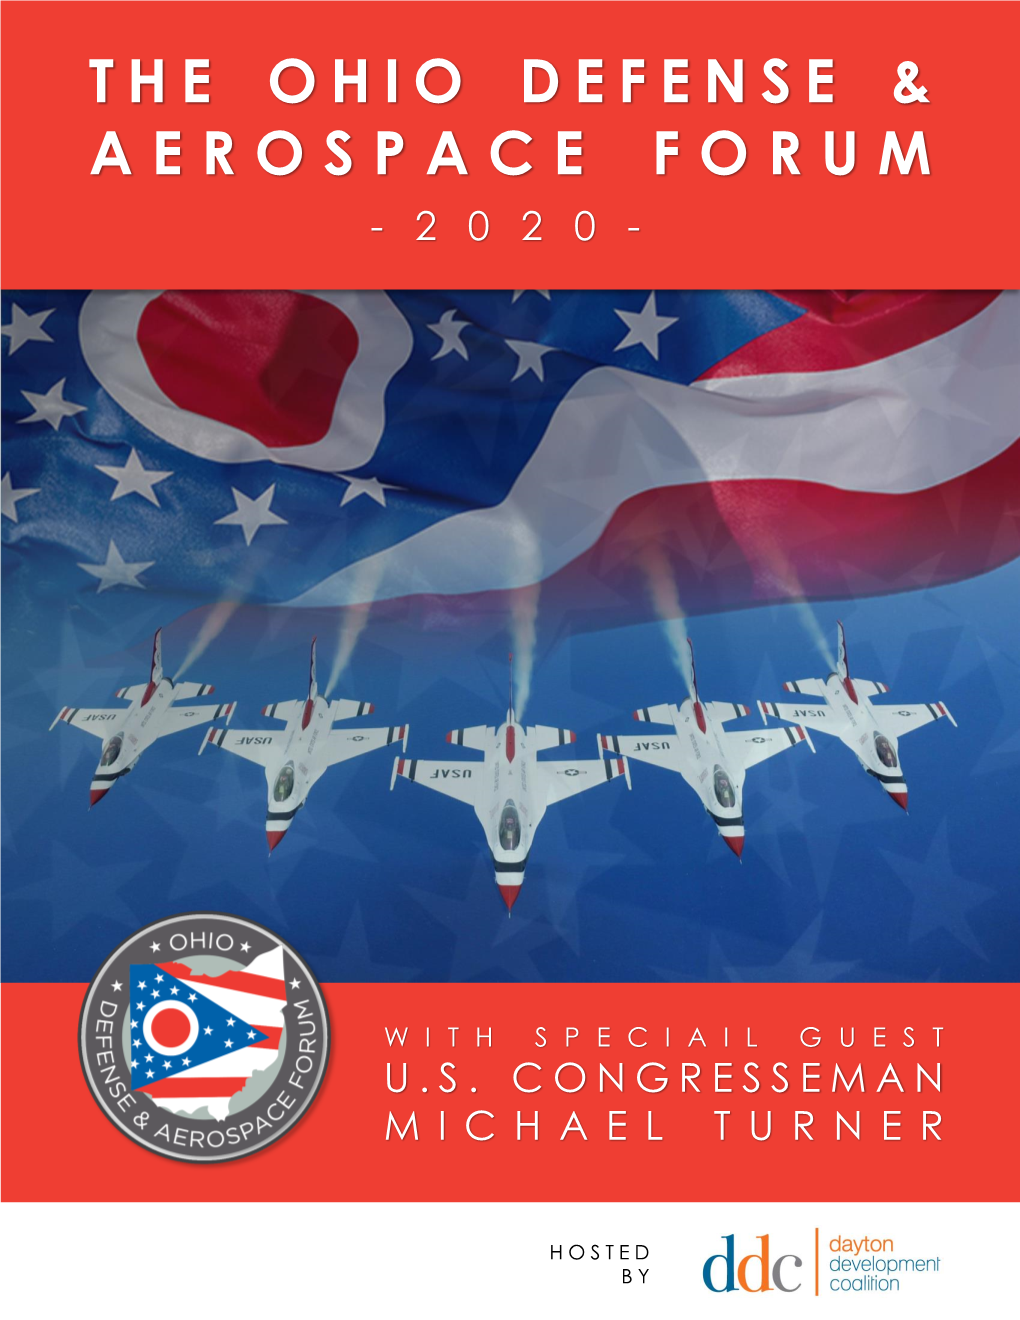 The Ohio Defense & Aerospace Forum